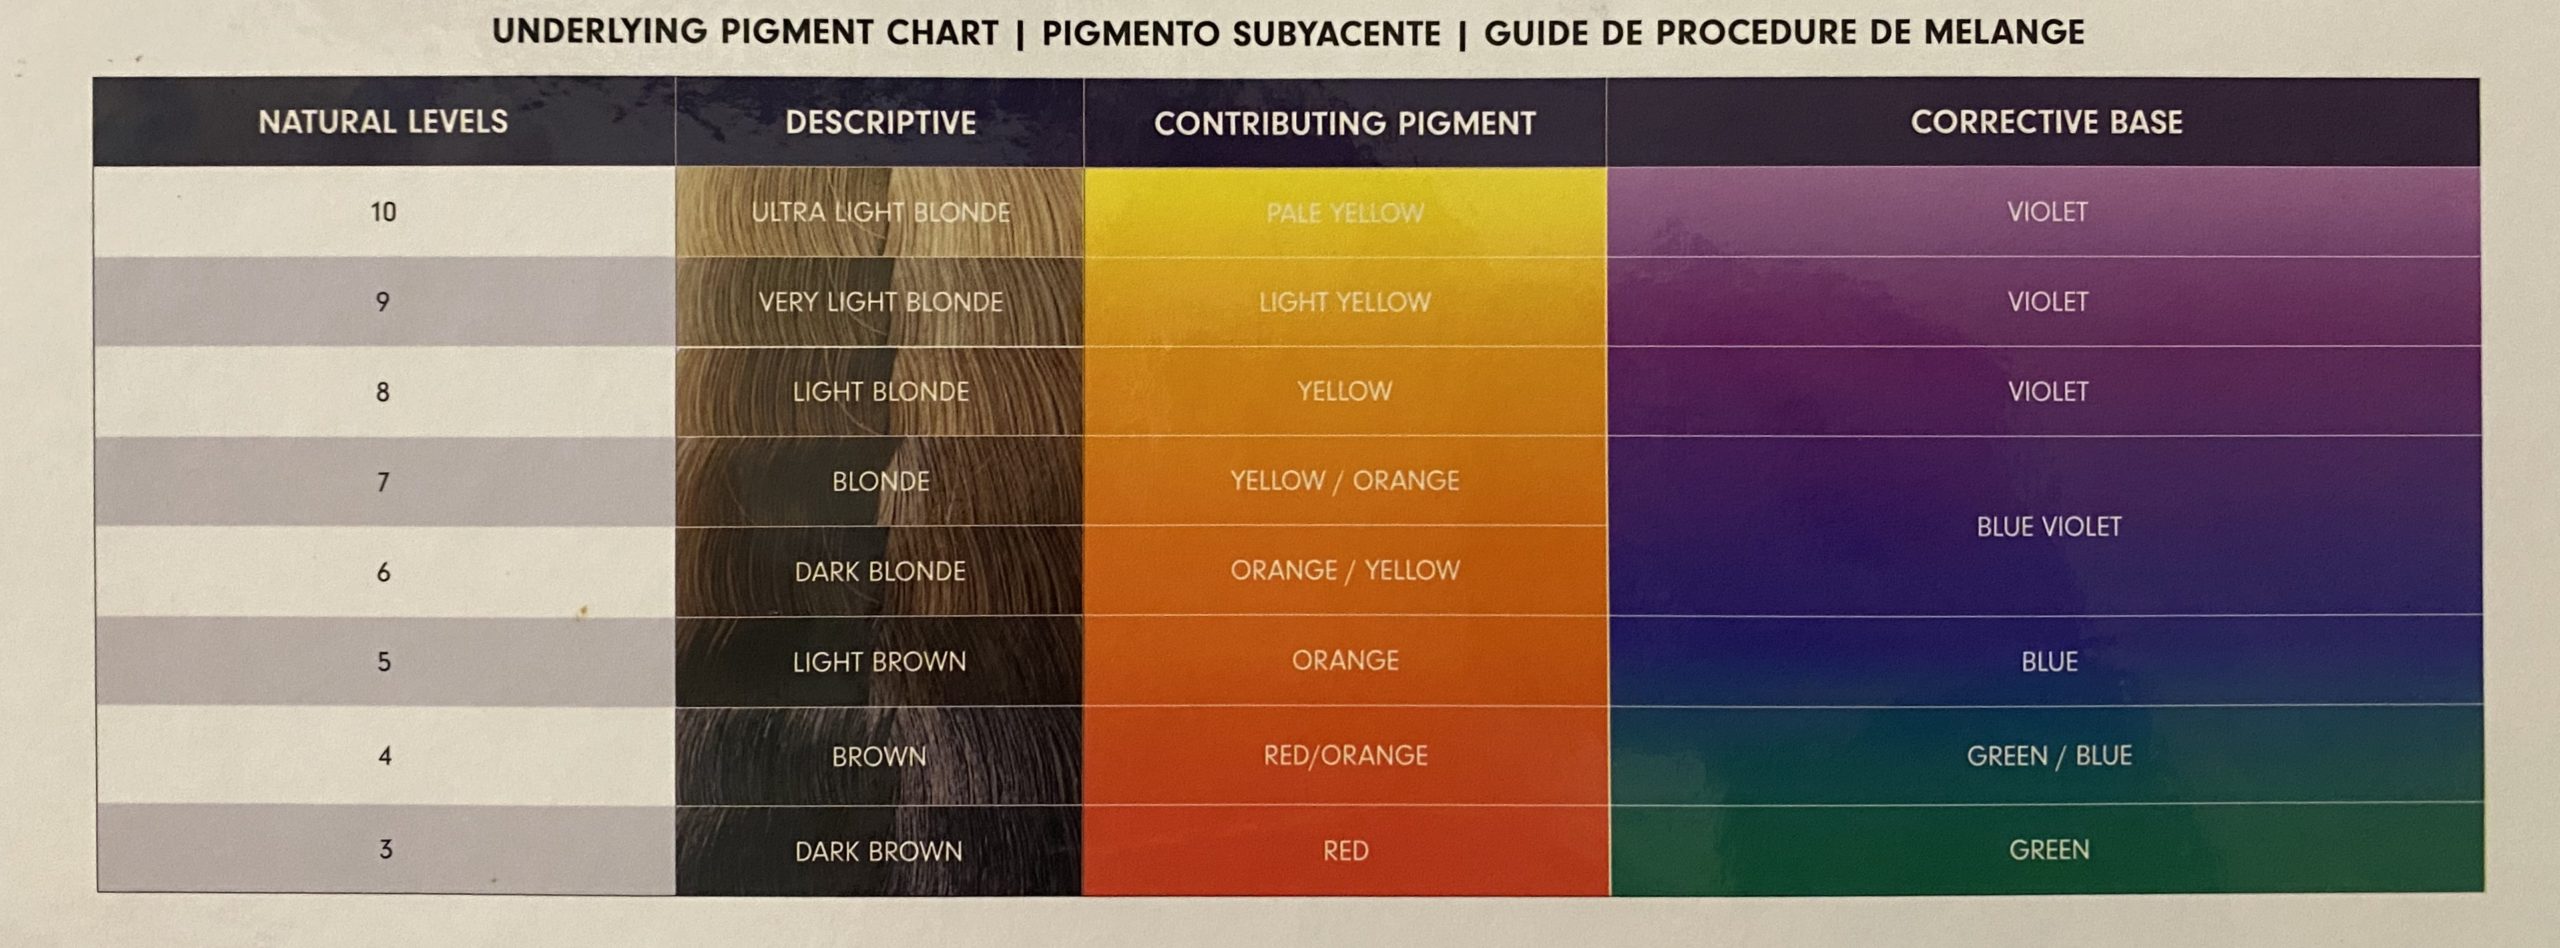 Hair lightening level chart.